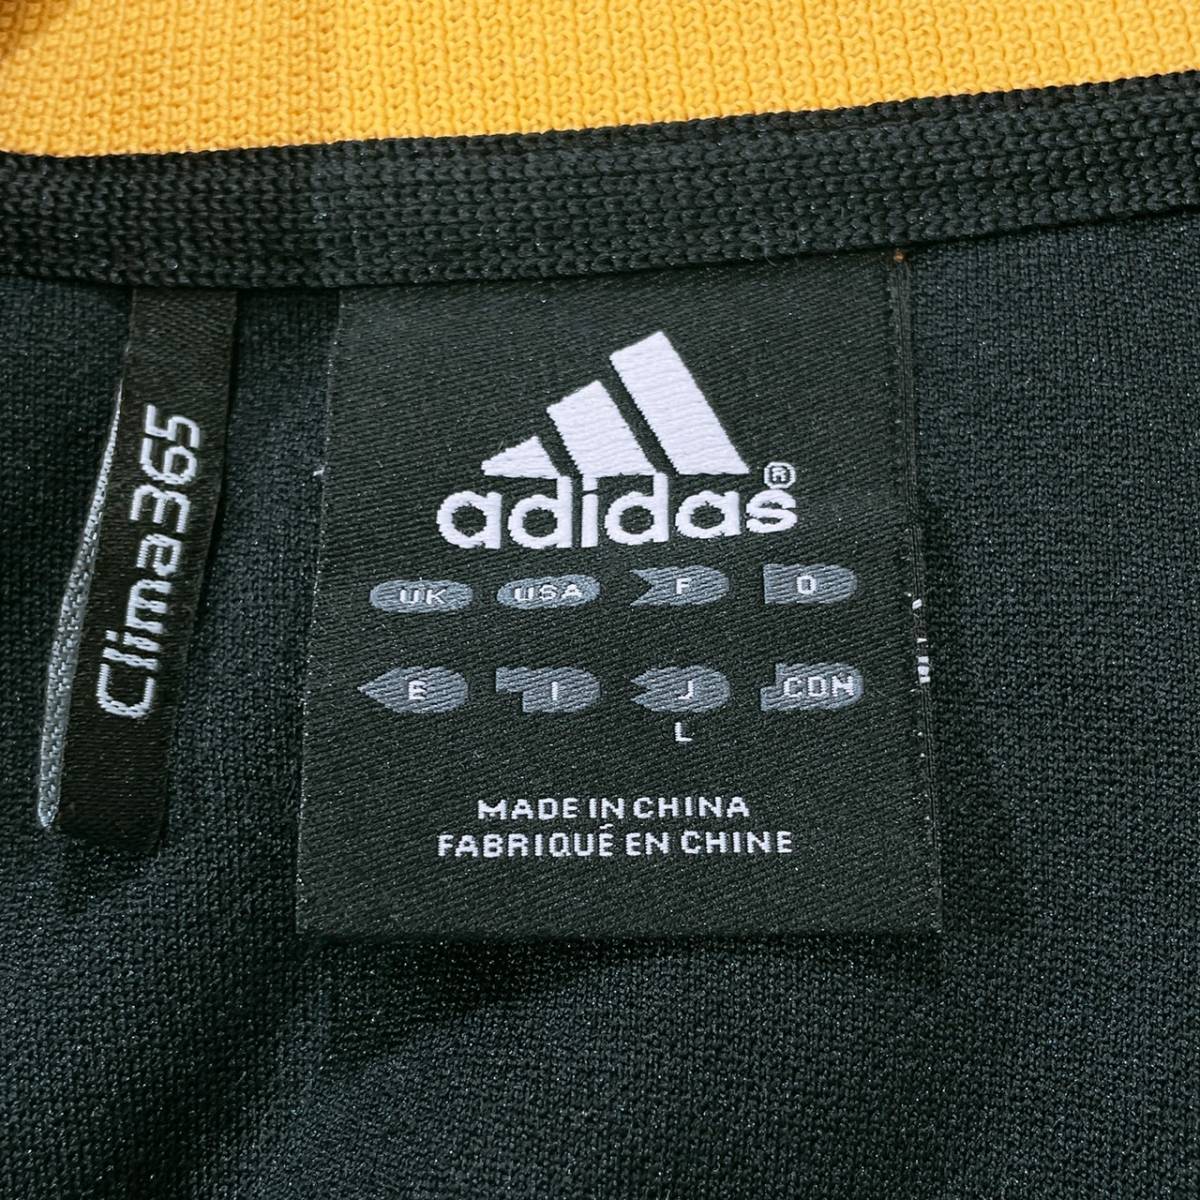 【21055】 adidas アディダス アウター ジャケット トラックジャケット スリーストライプ ジップアップ ロゴ ポケット ブラック 黒 L